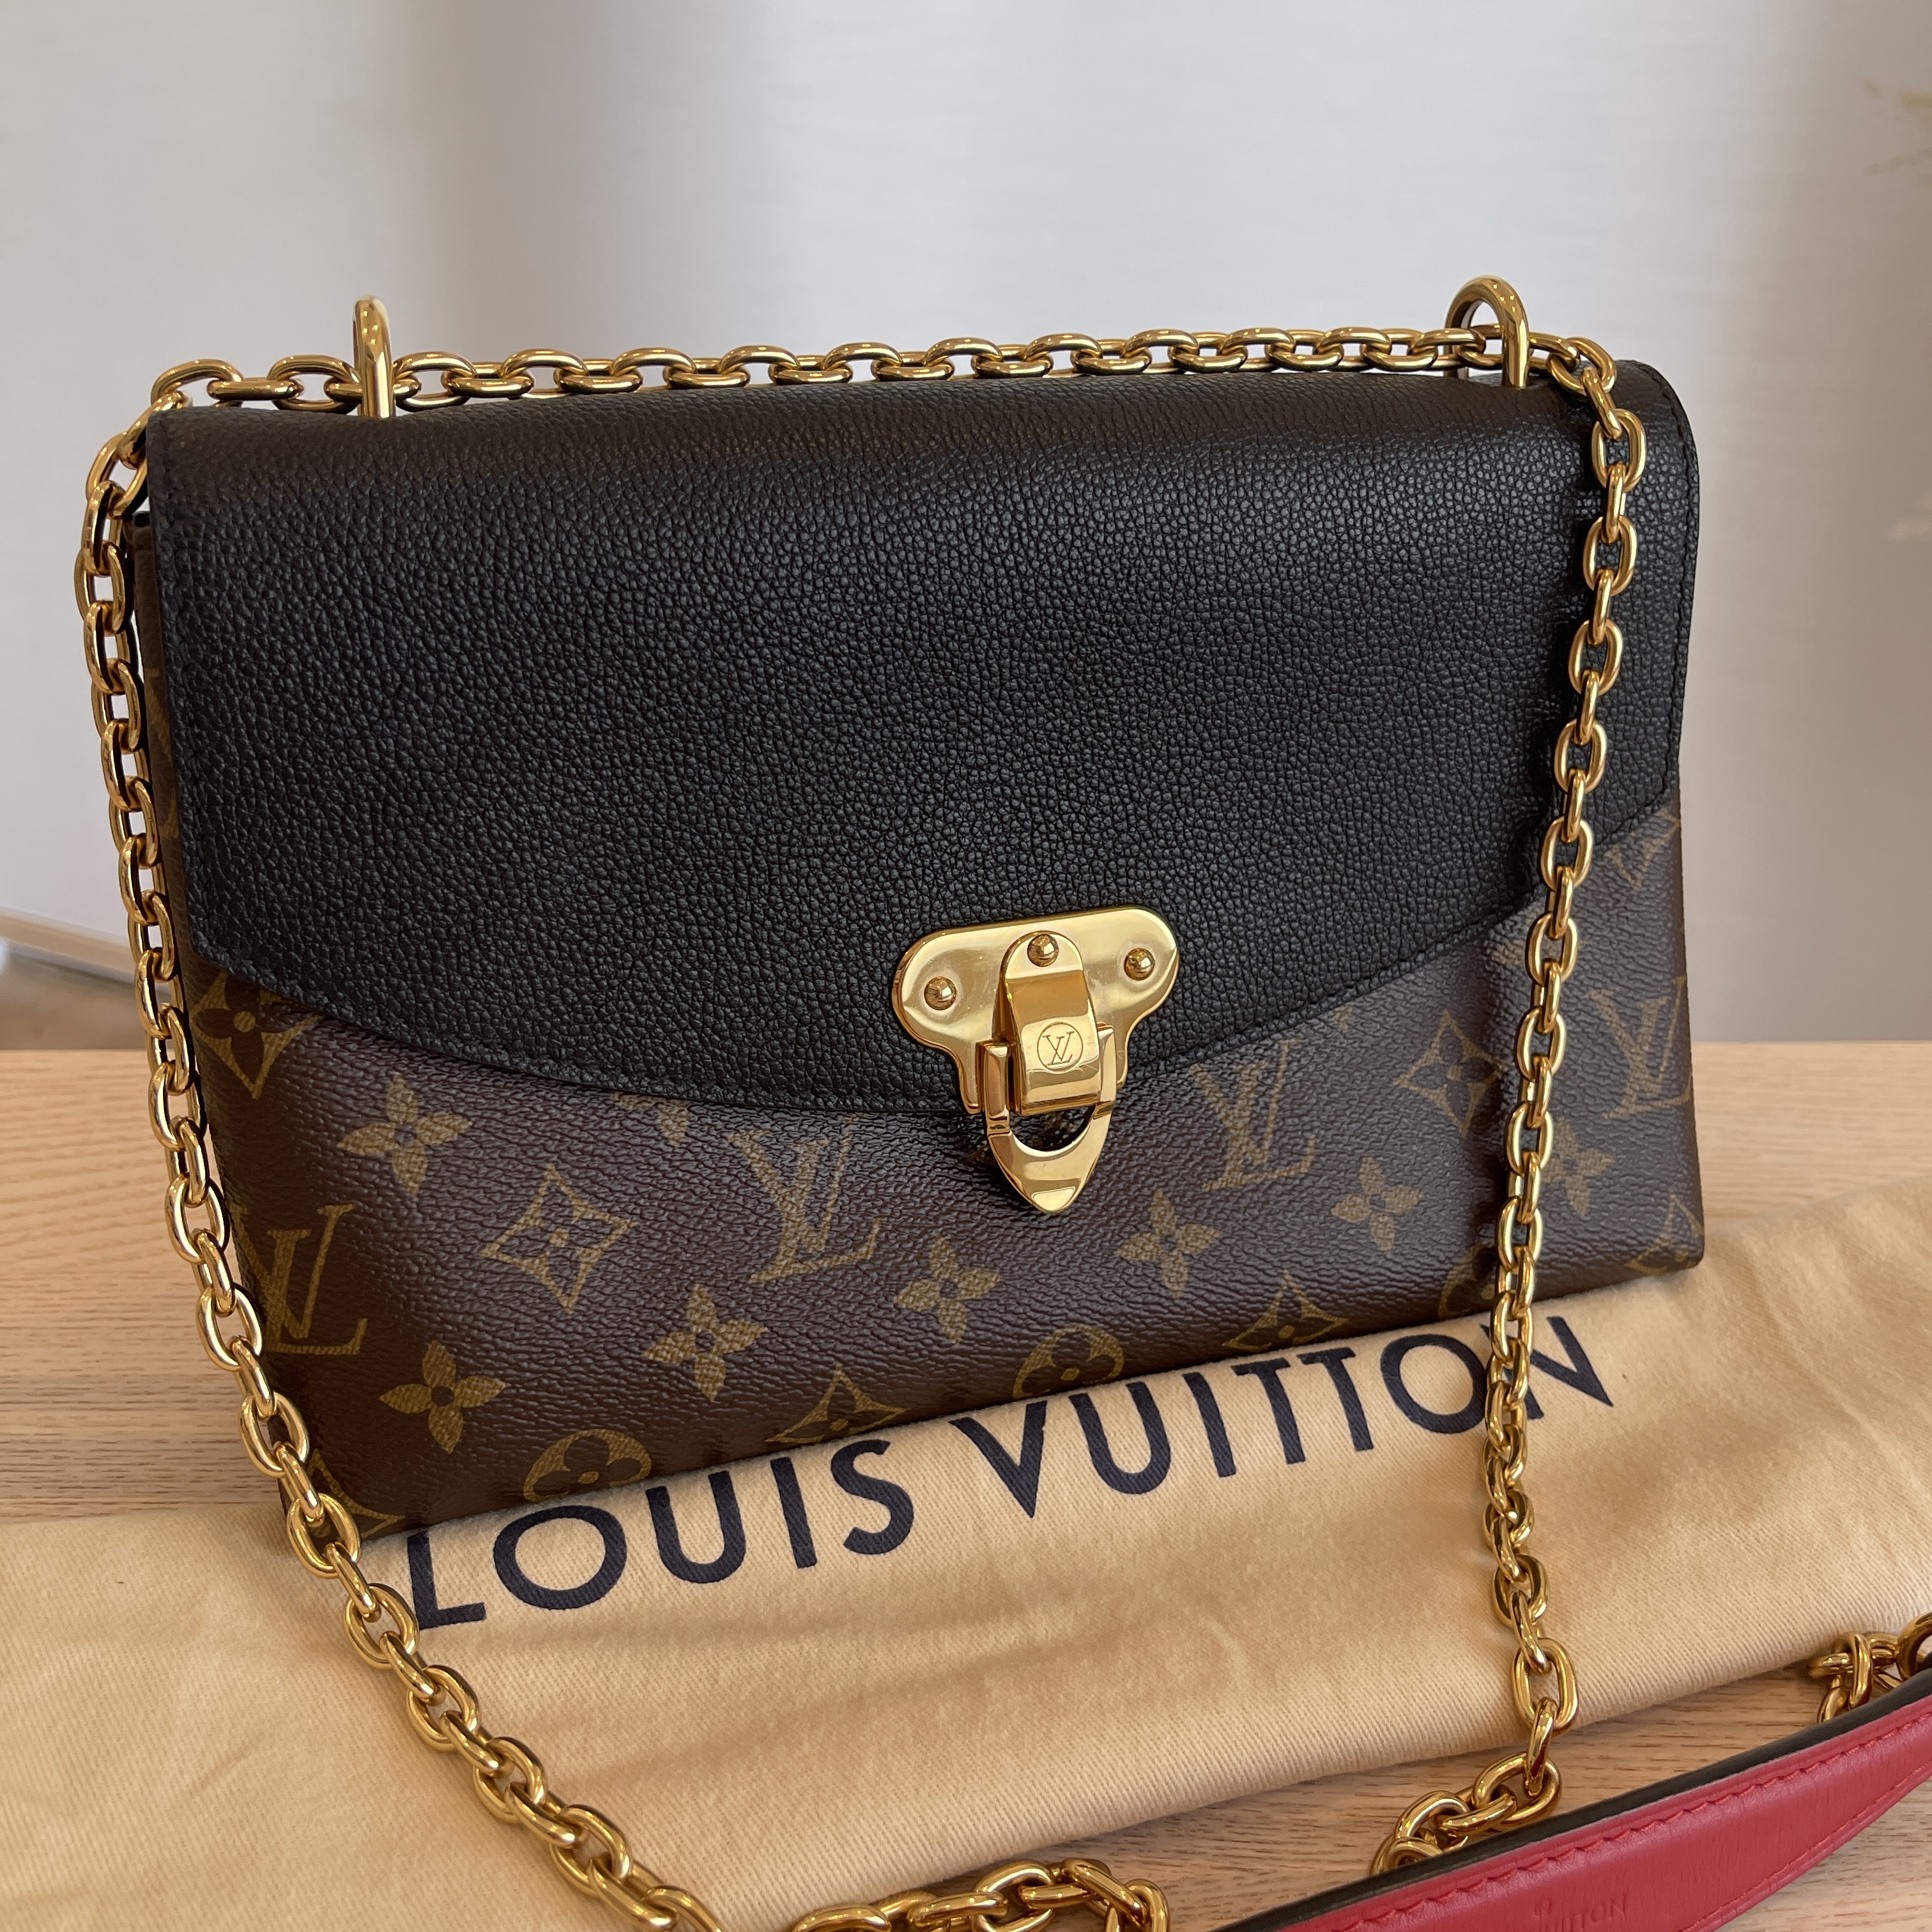 Saint placide leather handbag Louis Vuitton Black in Leather - 13922499